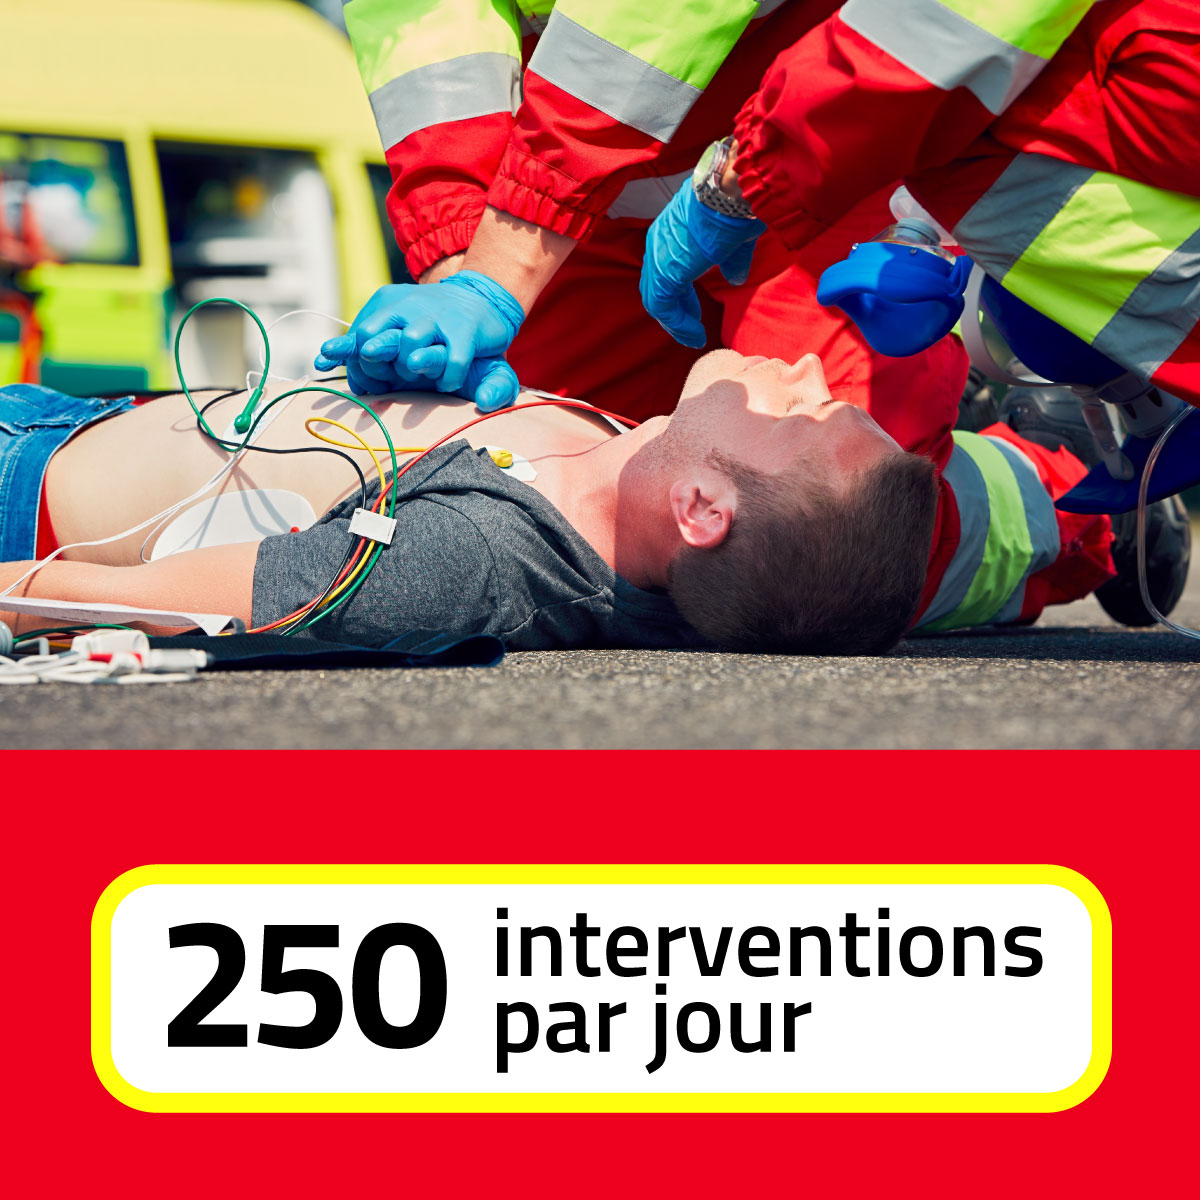 250 interventions par jour pour les pompiers bruxellois